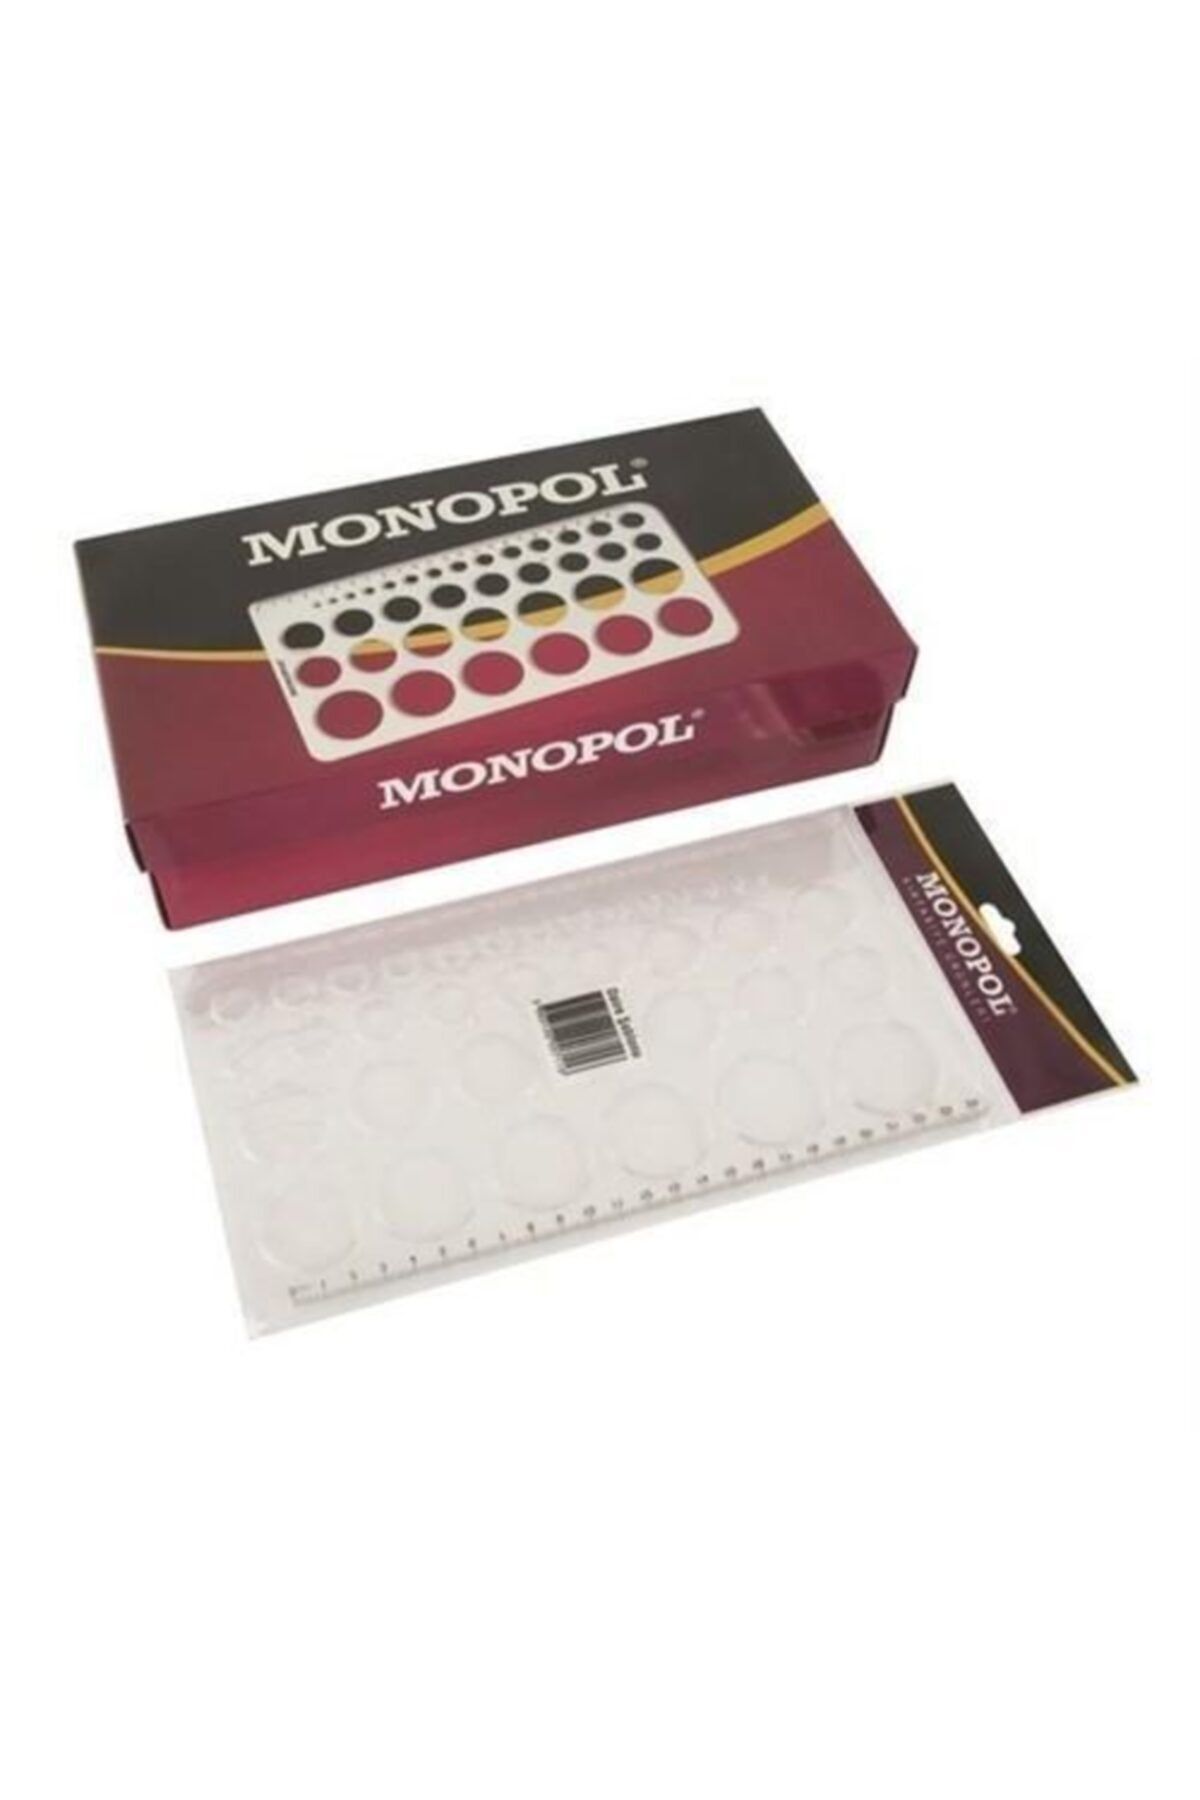 Monopol 1610 Daıre Sablonu